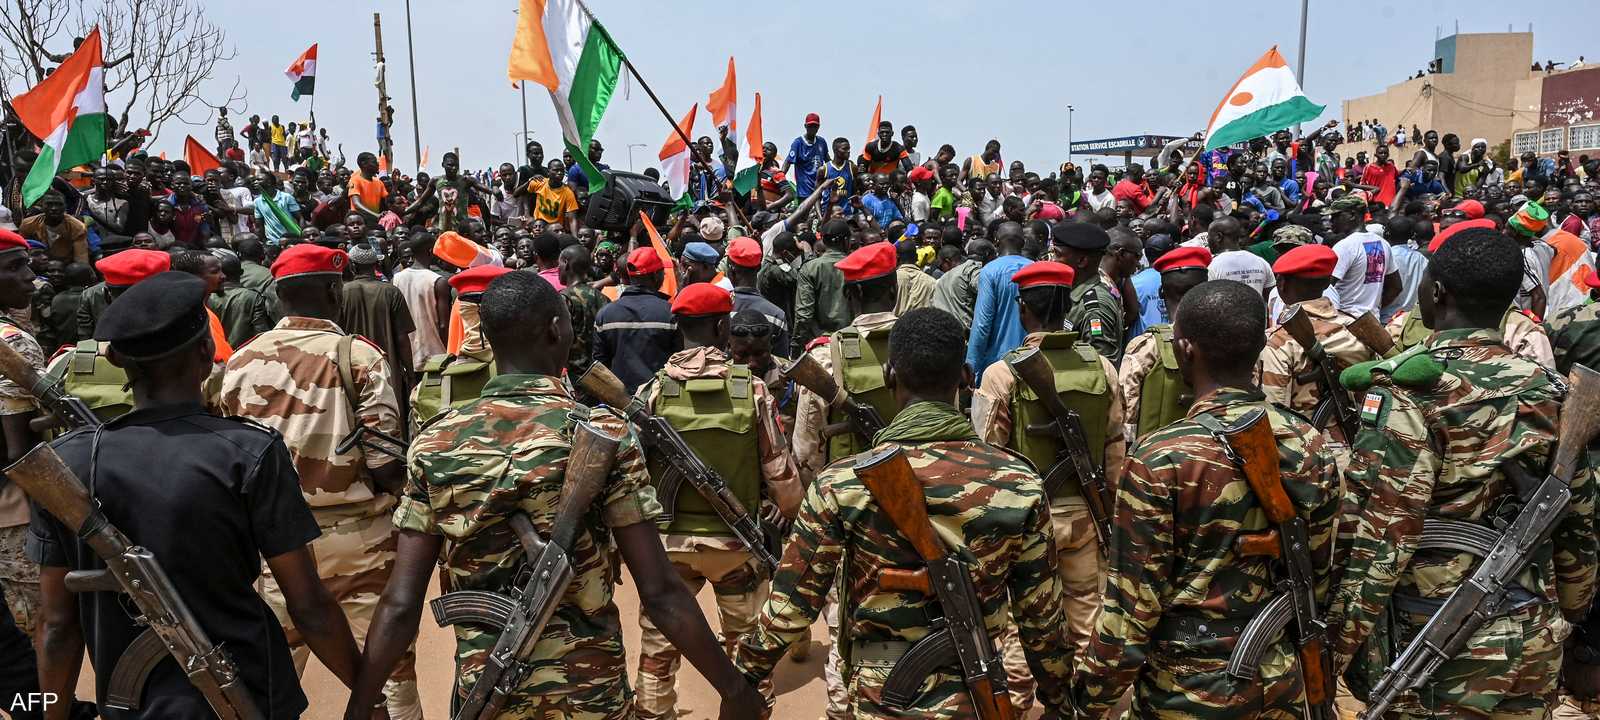 النيجر تشهد مشكلات كبيرة بعد الانقلاب